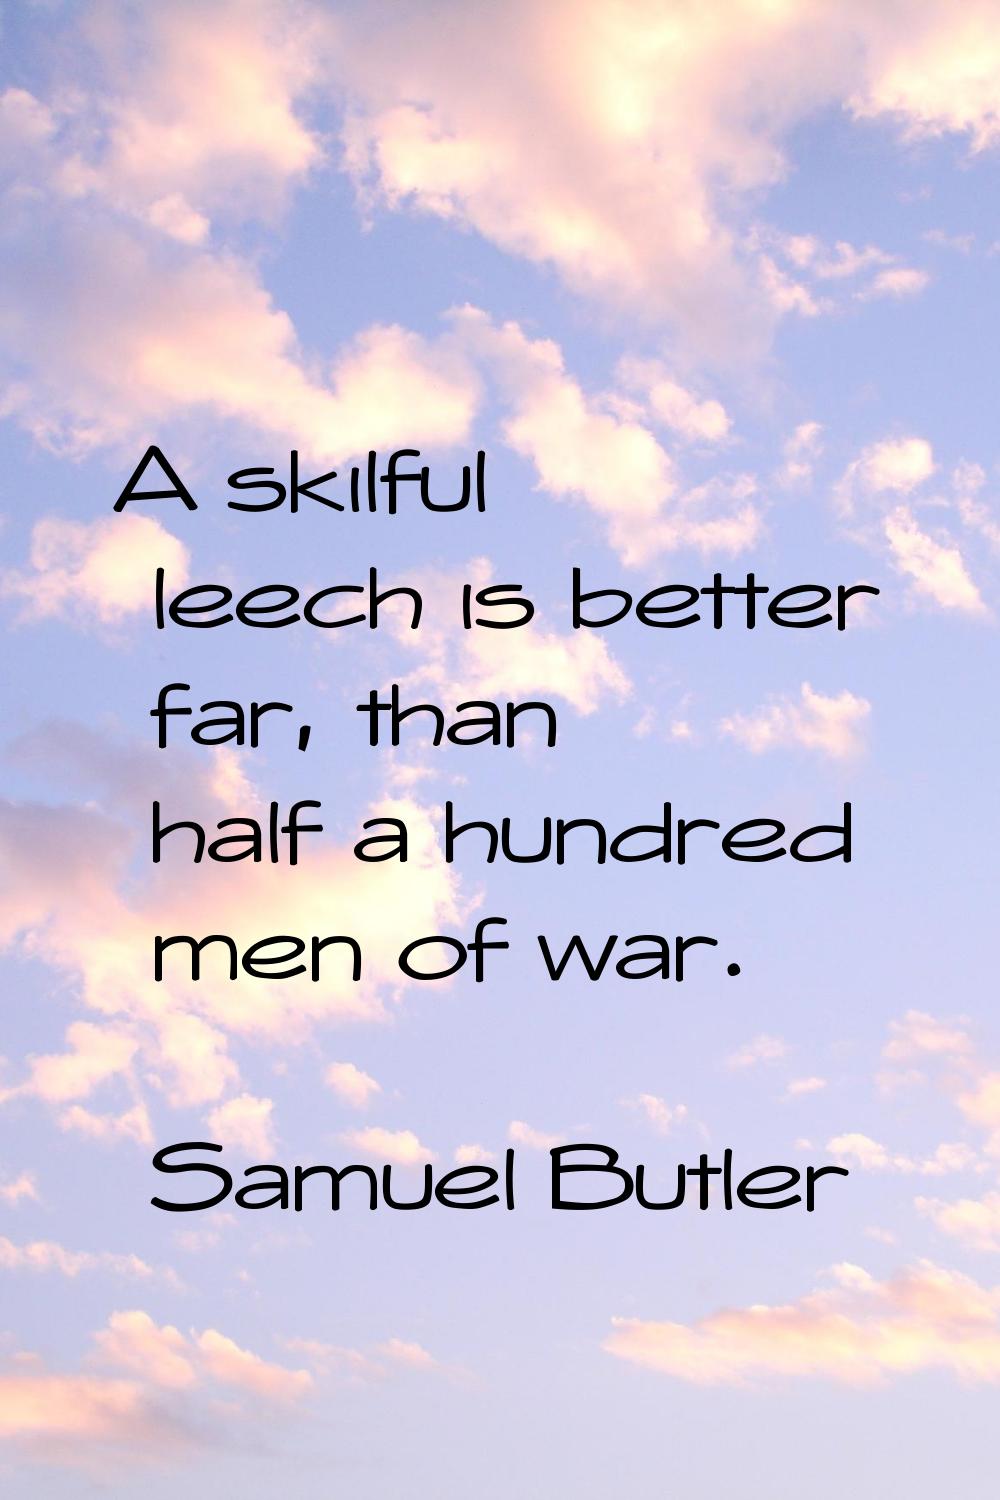 A skilful leech is better far, than half a hundred men of war.